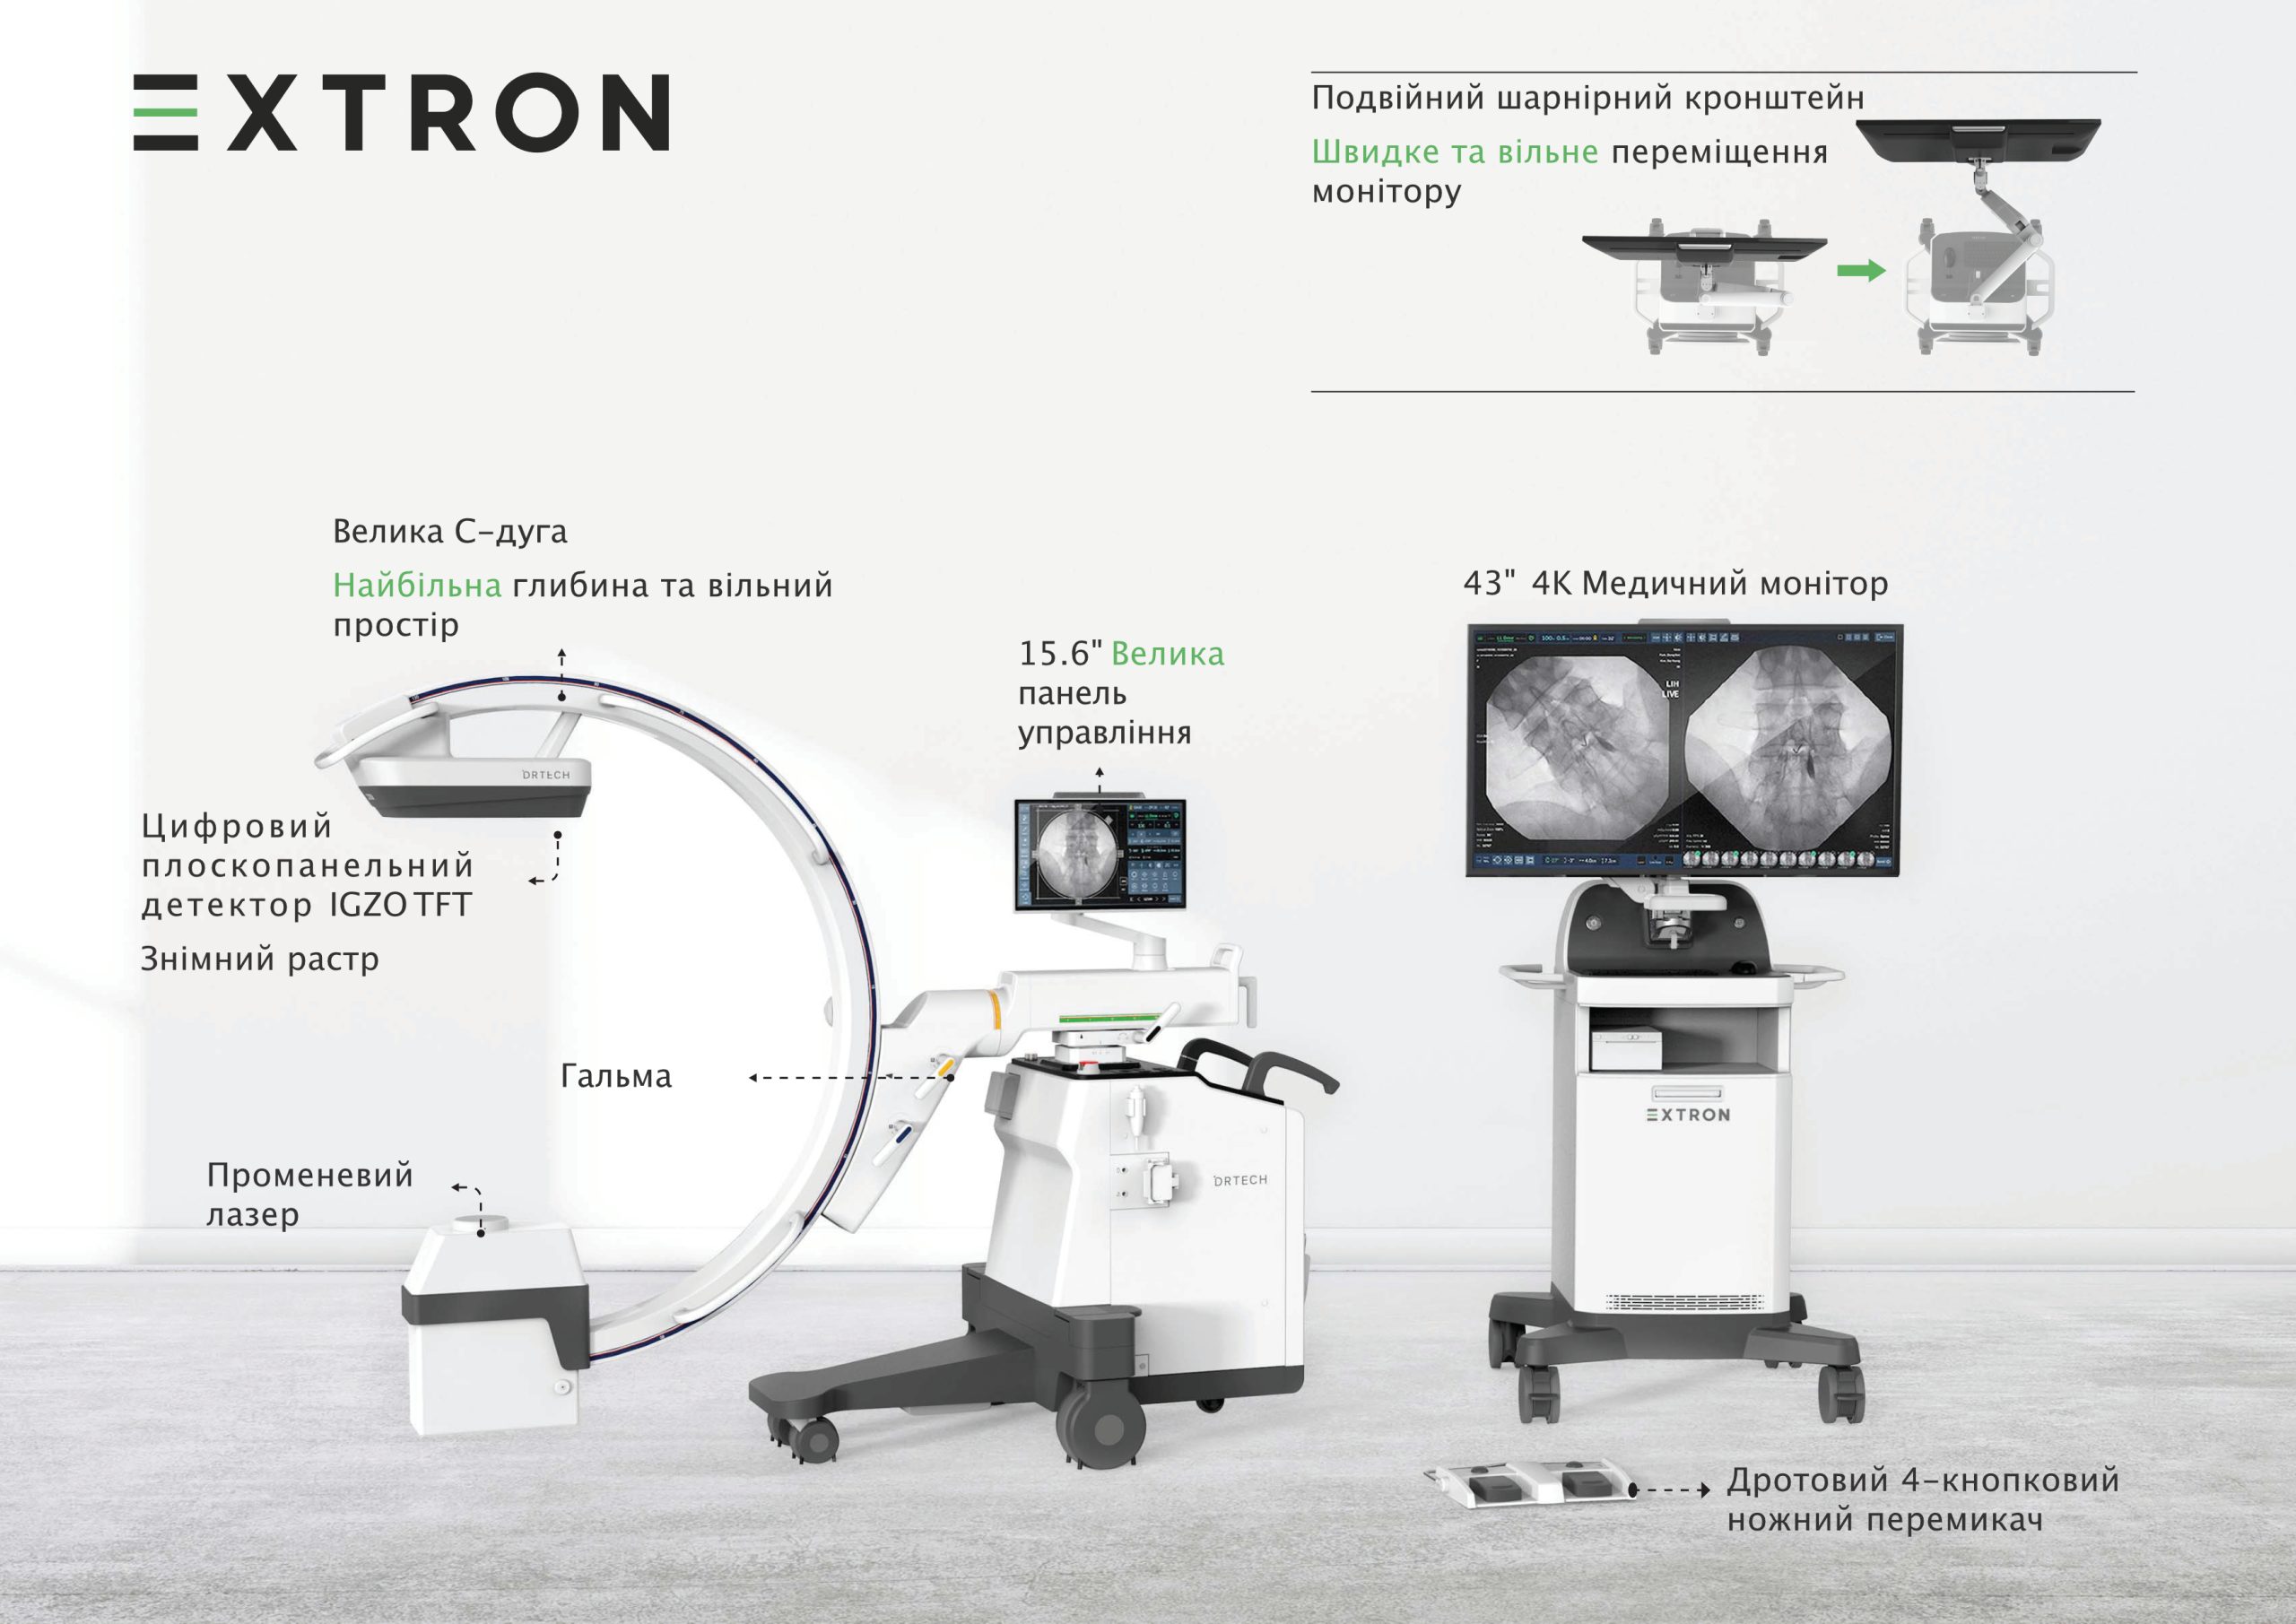 Система рентгенівська флюороскопічна <nobr>EXTRON 7,</nobr> виробництва DRTECH Corp. (Республіка Корея)  